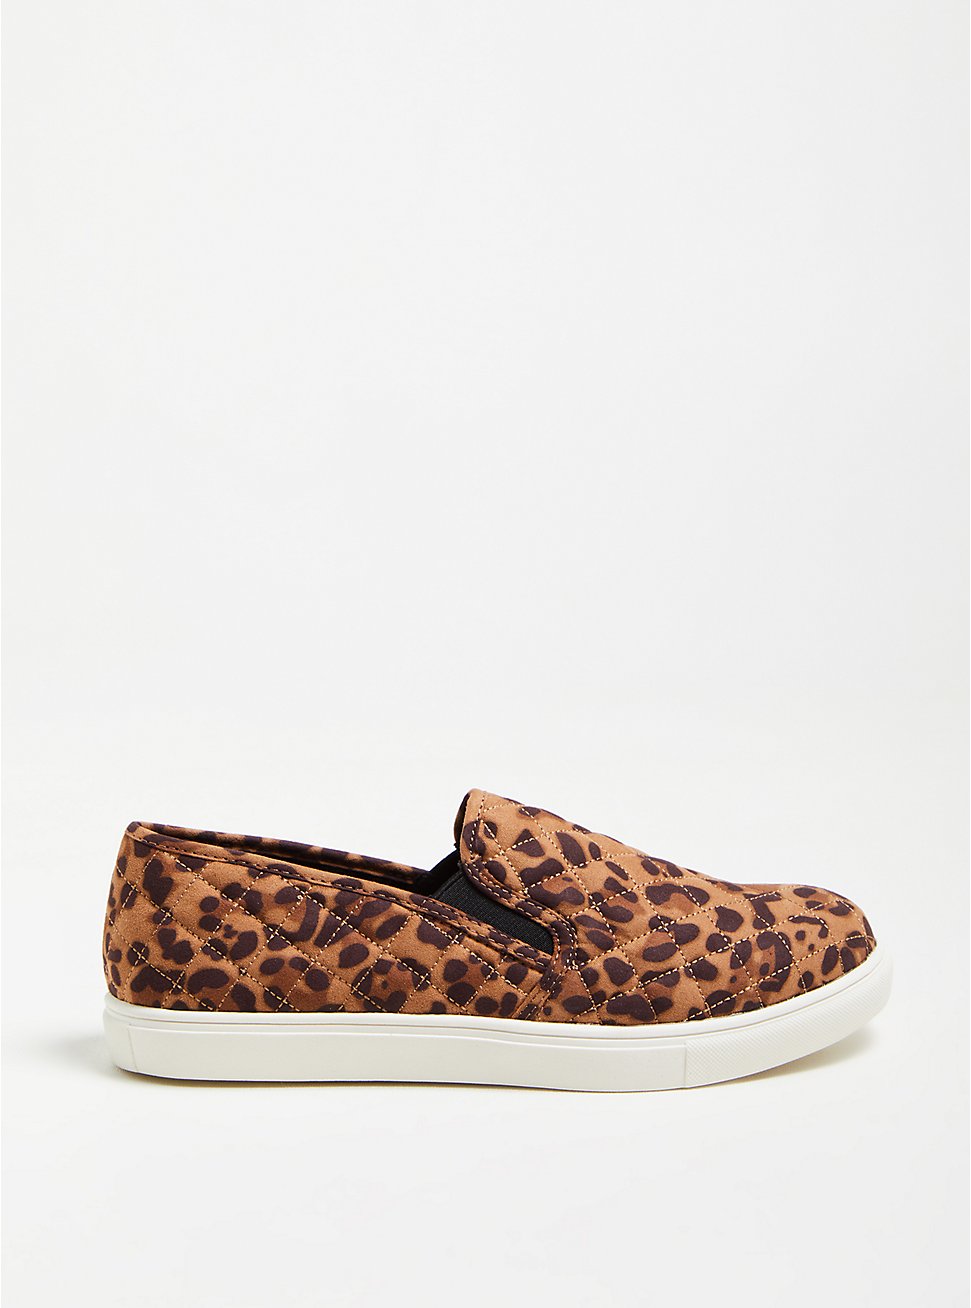 Plus Size Slip-On Sneaker - Faux Suede Leopard (WW), LEOPARD, hi-res